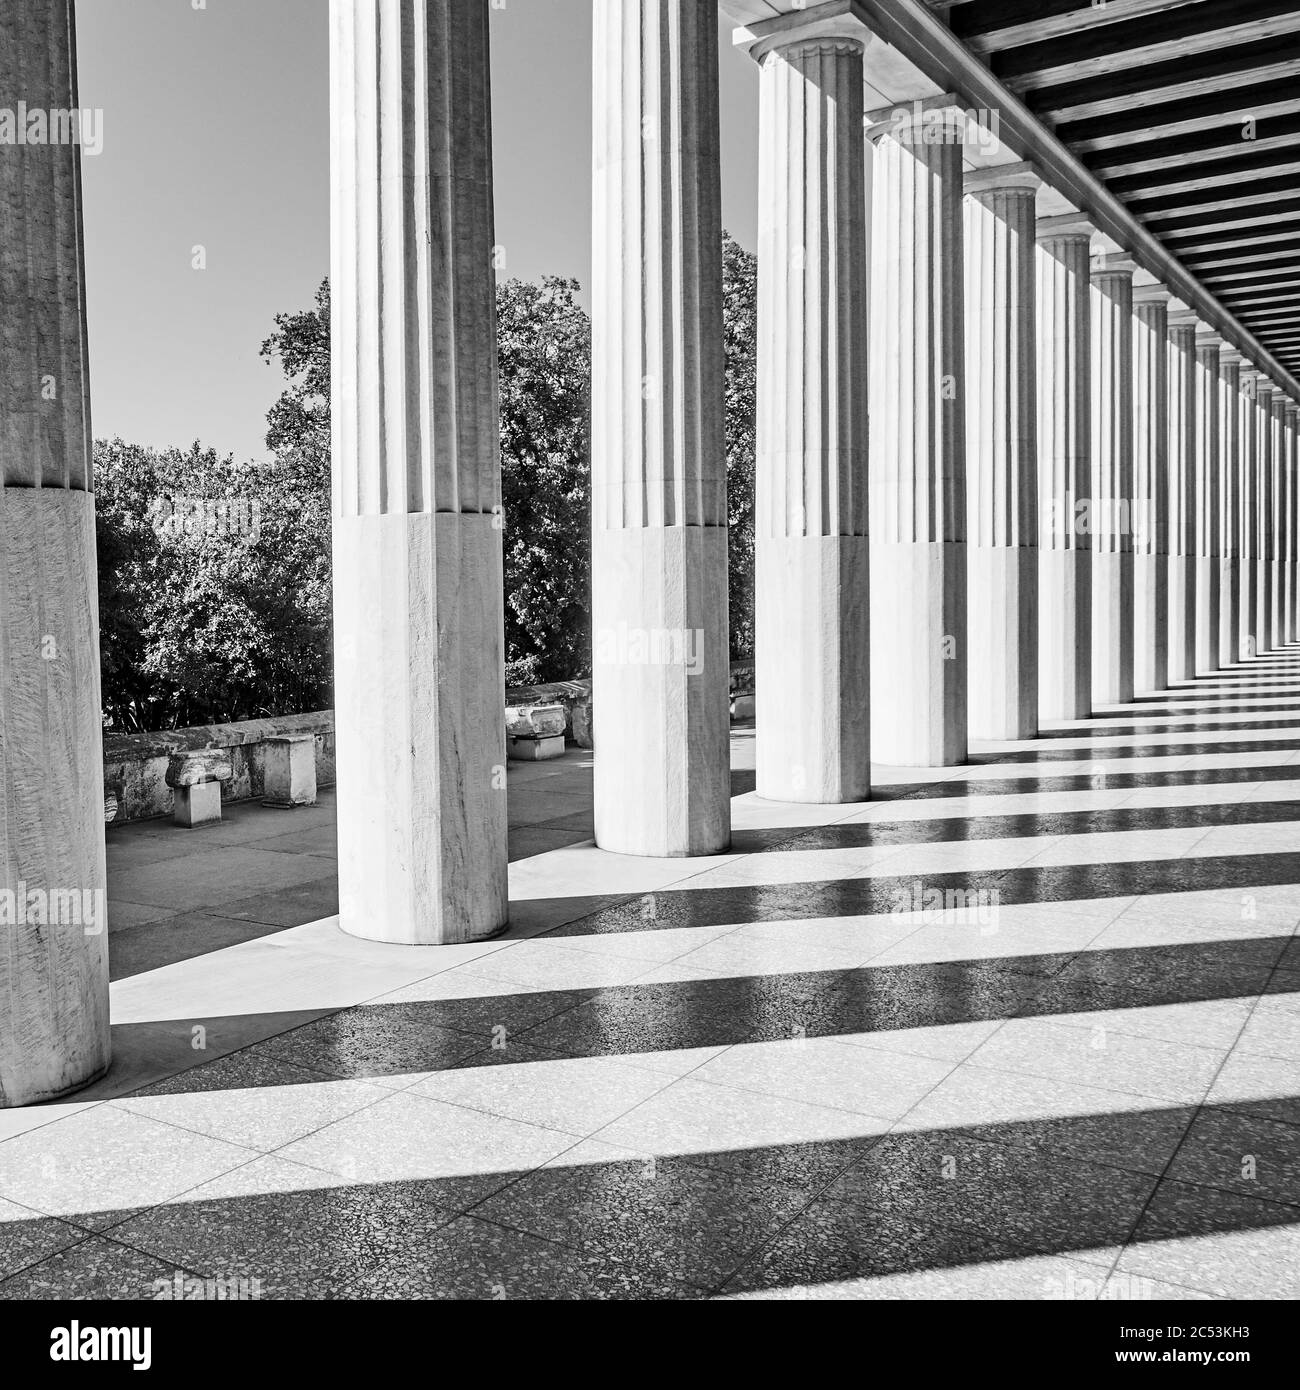 Colonne greche classiche, Atene, Grecia. Fotografia architettonica in bianco e nero Foto Stock